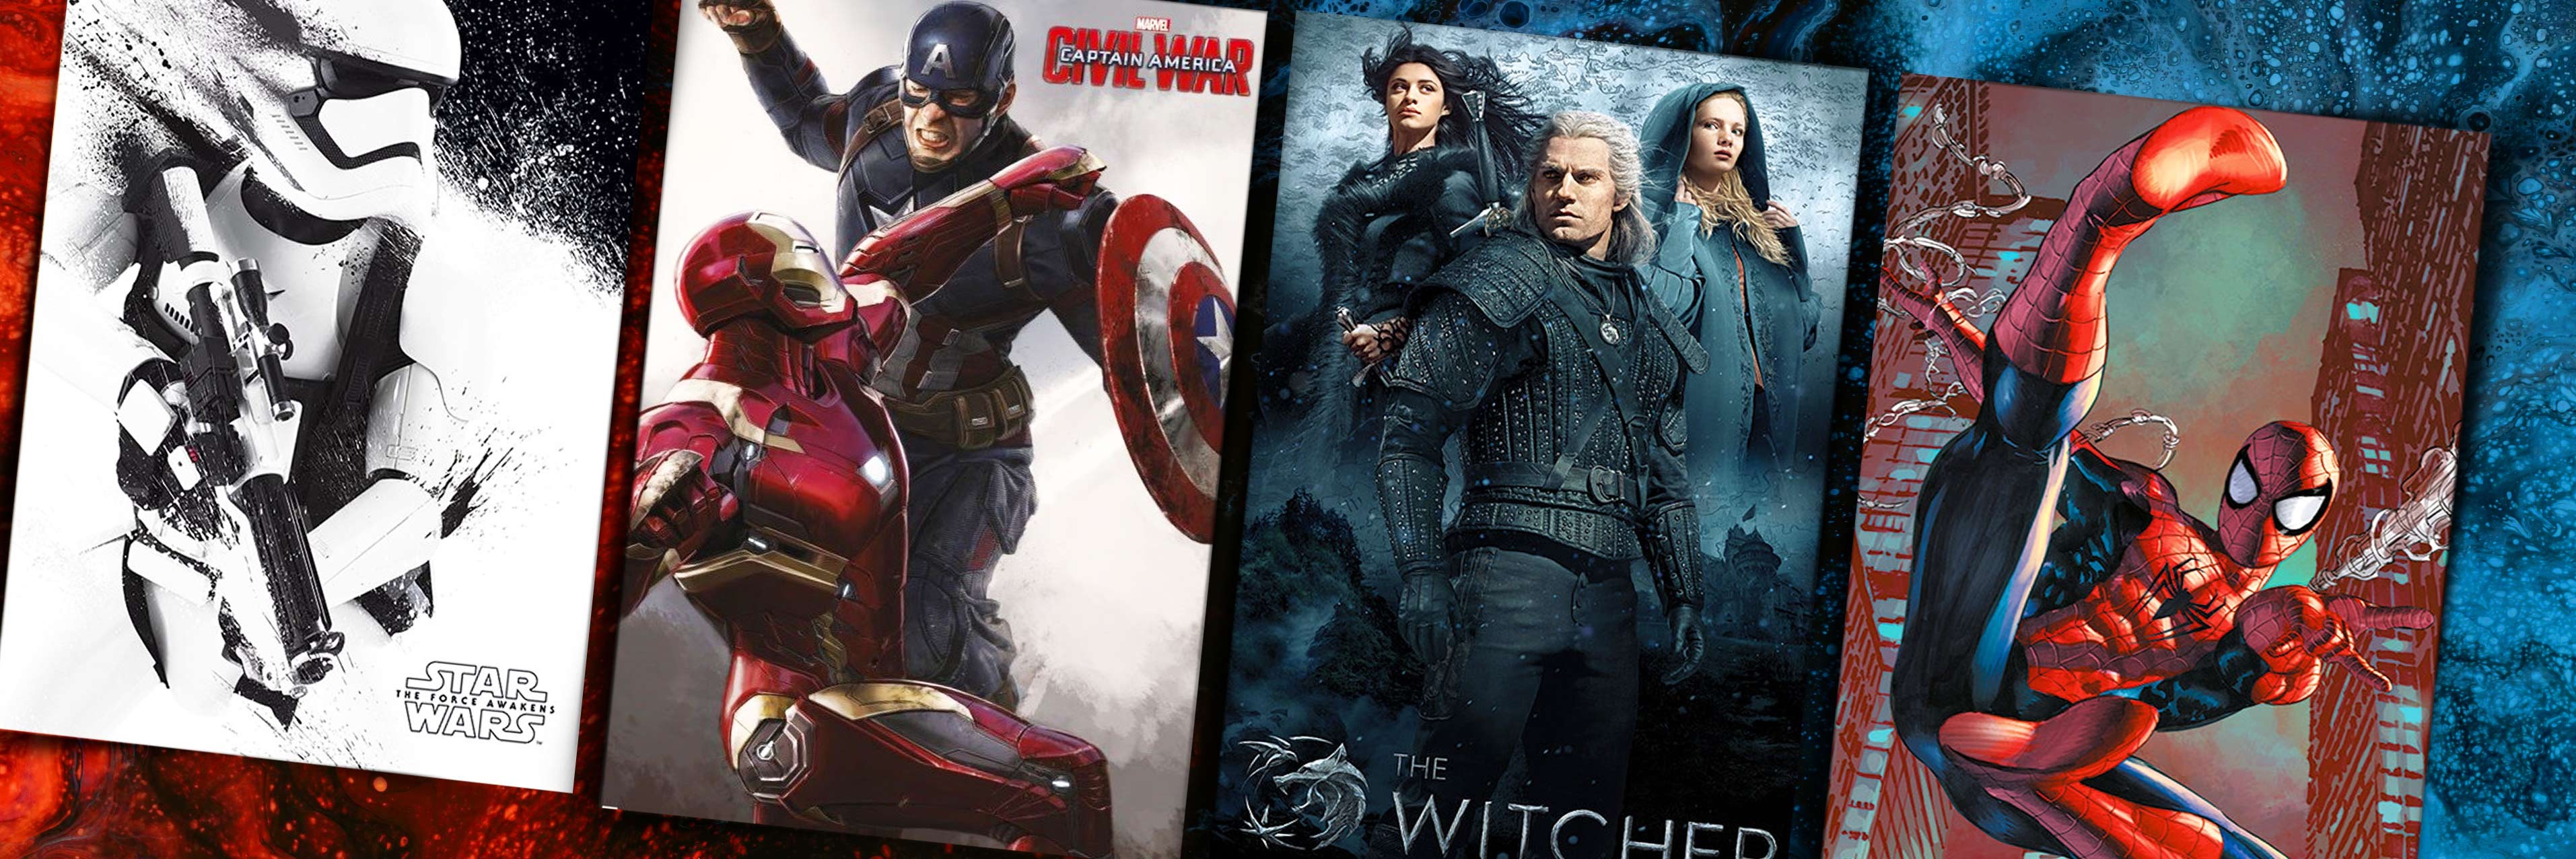 Avengers: Endgame - Movie Poster / Print (Regular Style) (Size: 24